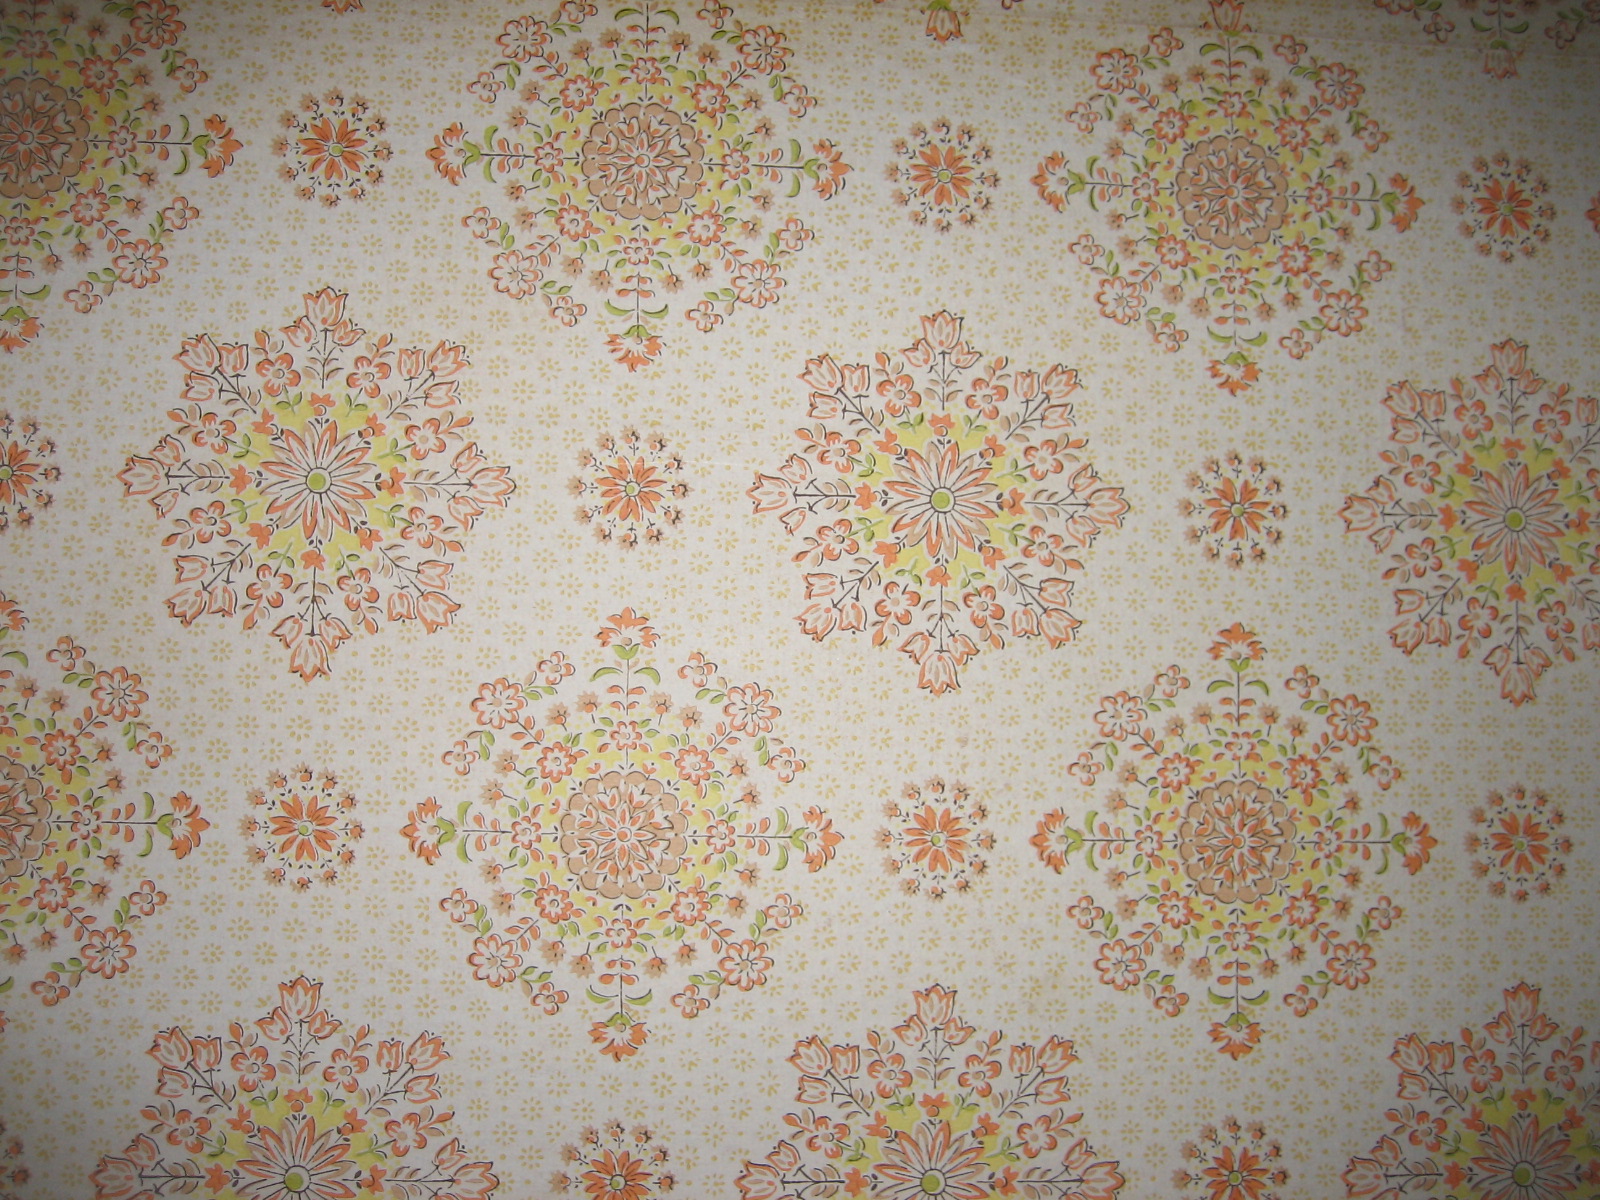 retro wallpaper designs 2015   Grasscloth Wallpaper